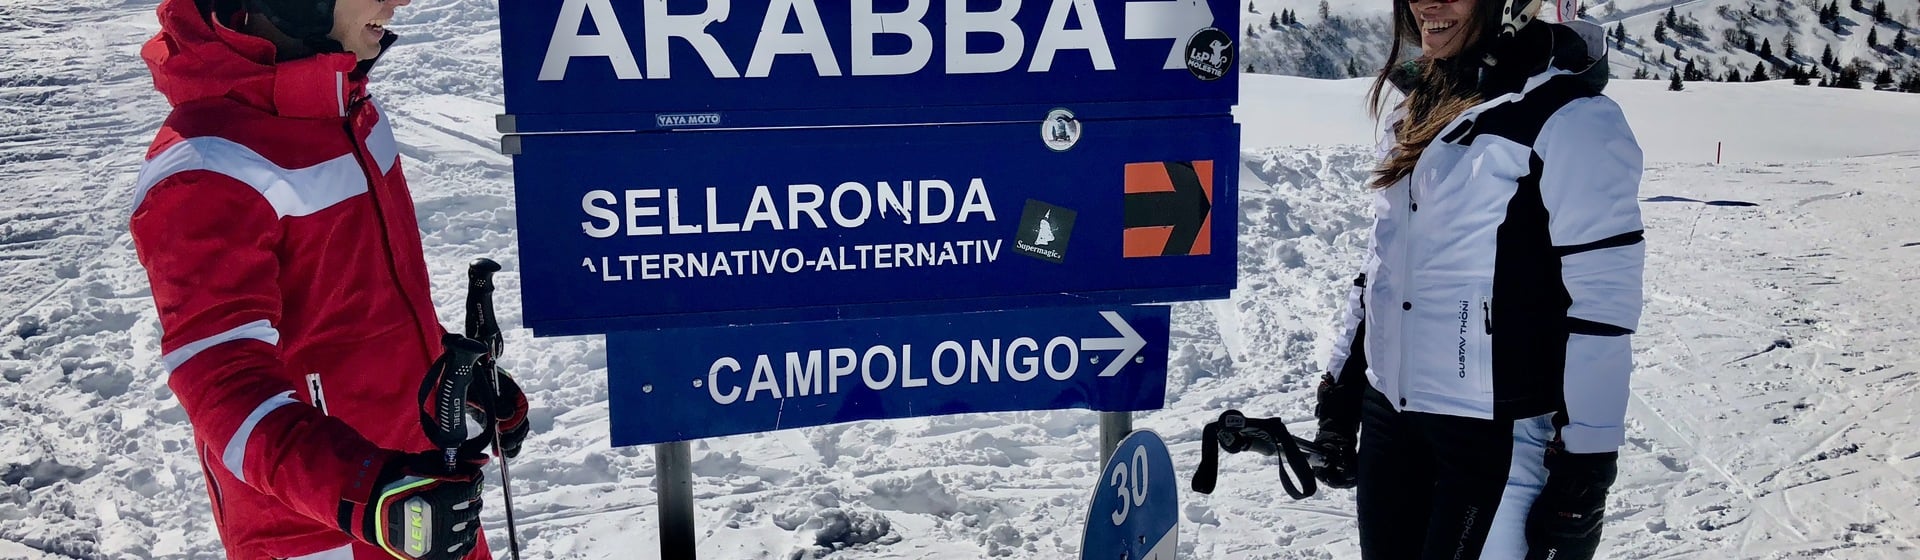 Copia di Arabba-Marmolada Neuheiten für die kommende Wintersaison 2021/2022